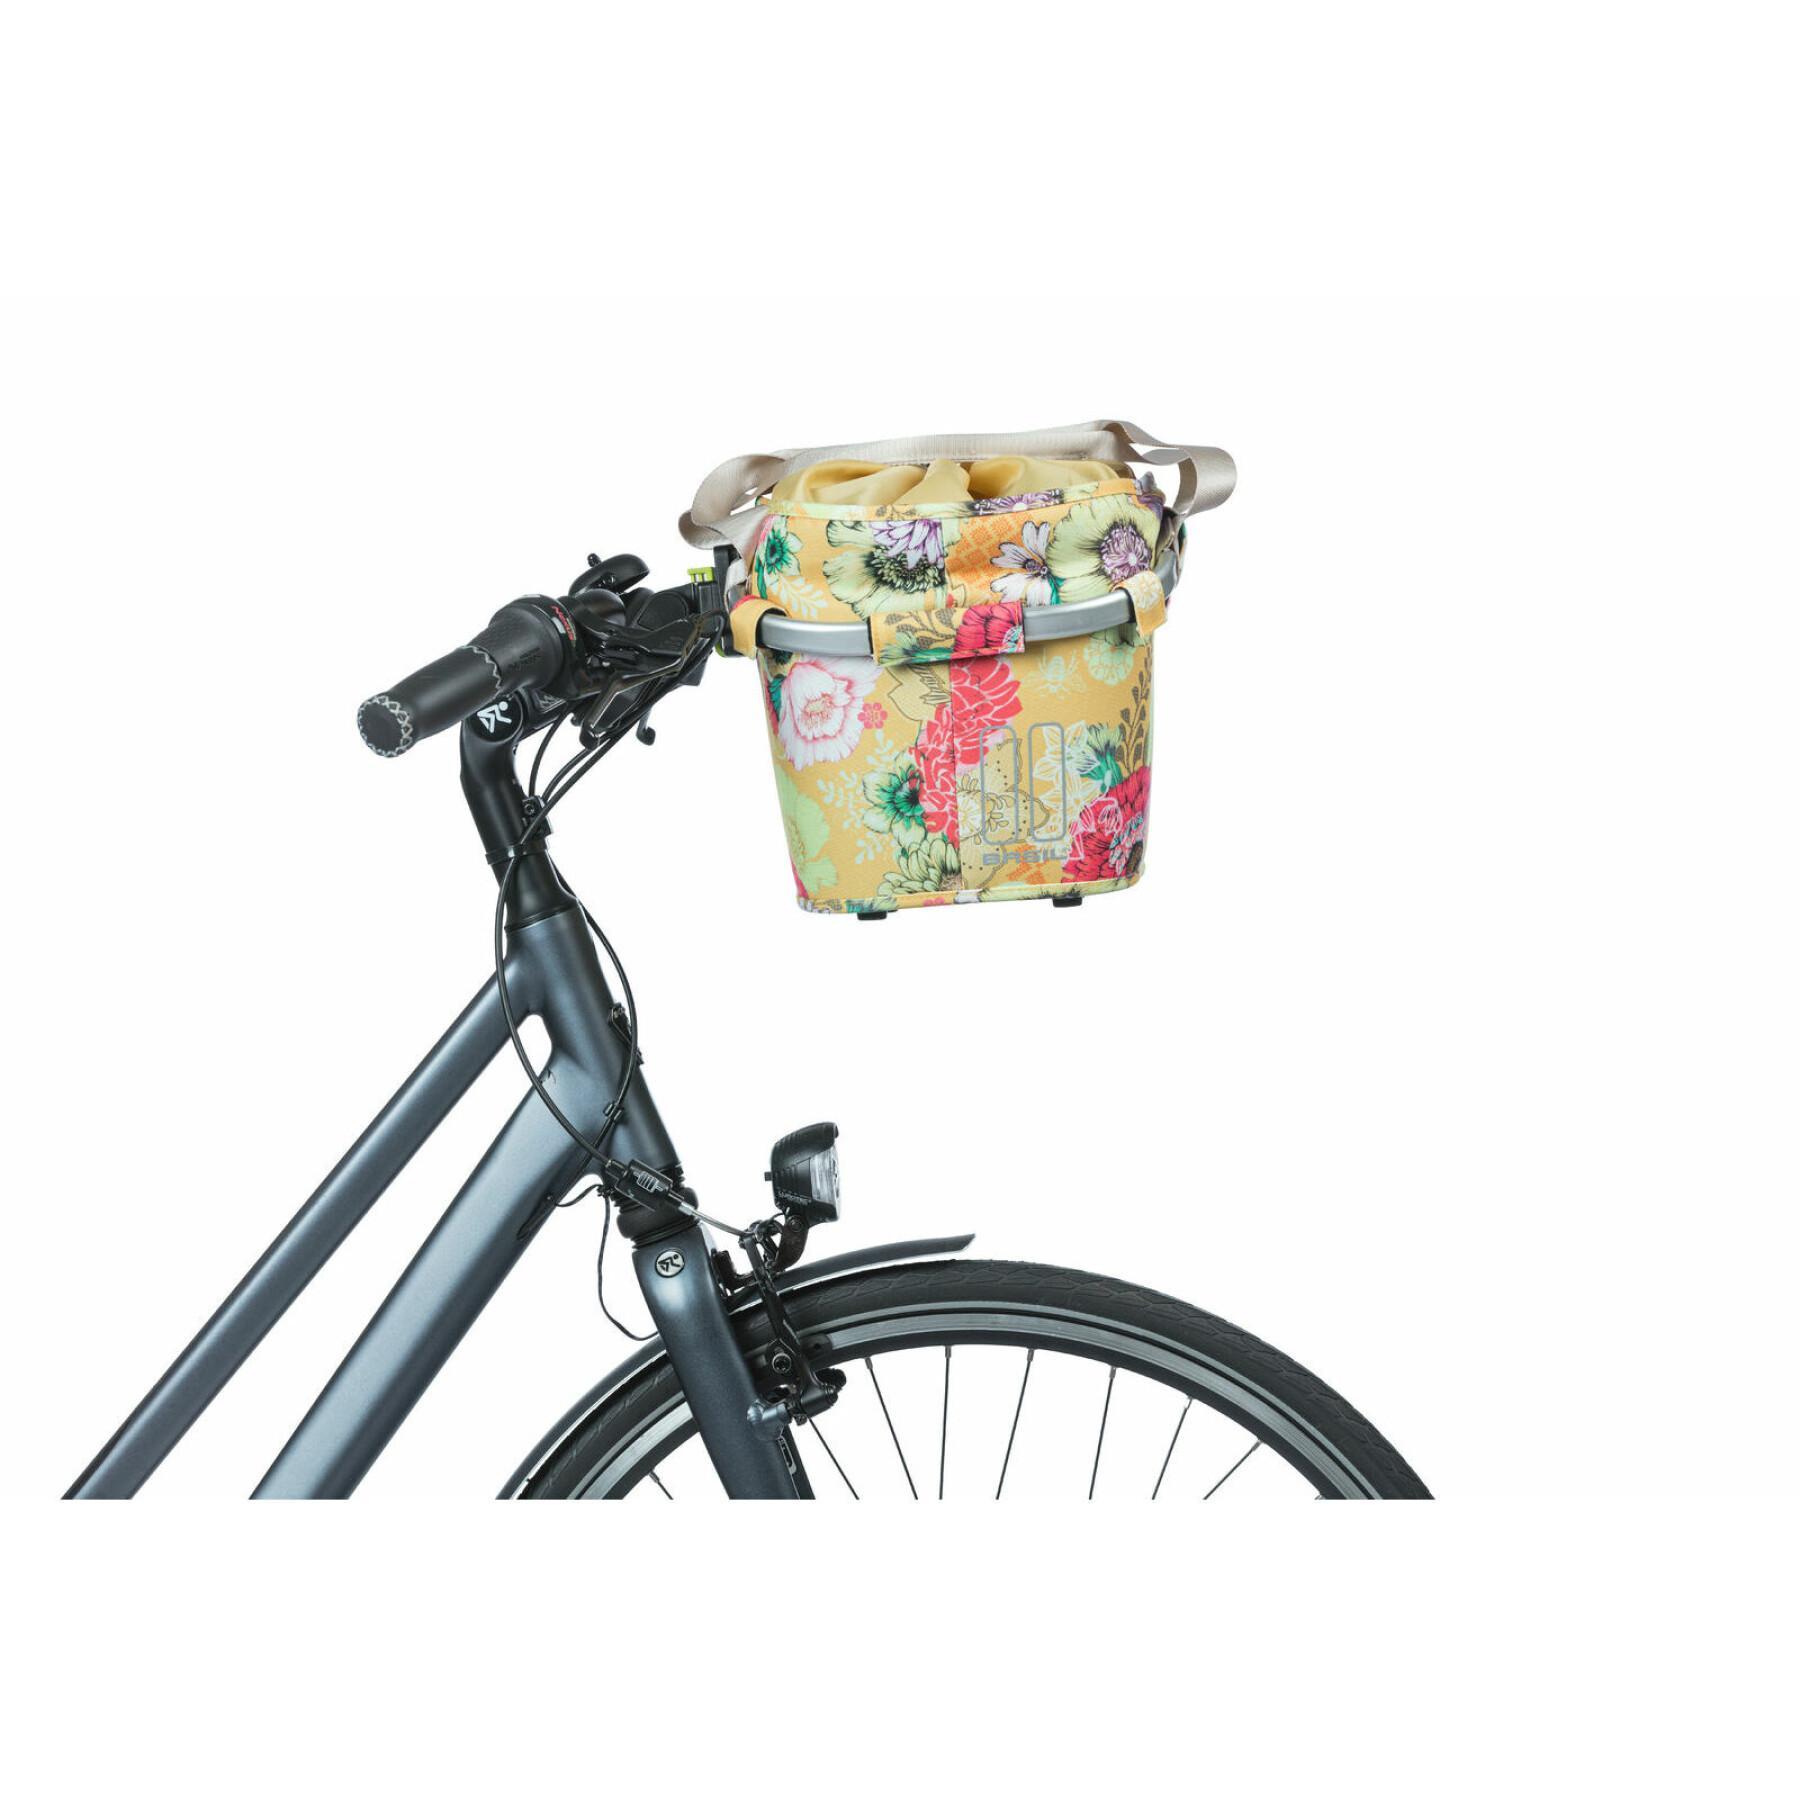 Waterproof front bike basket with reflective Basil Bloom field Klickfix